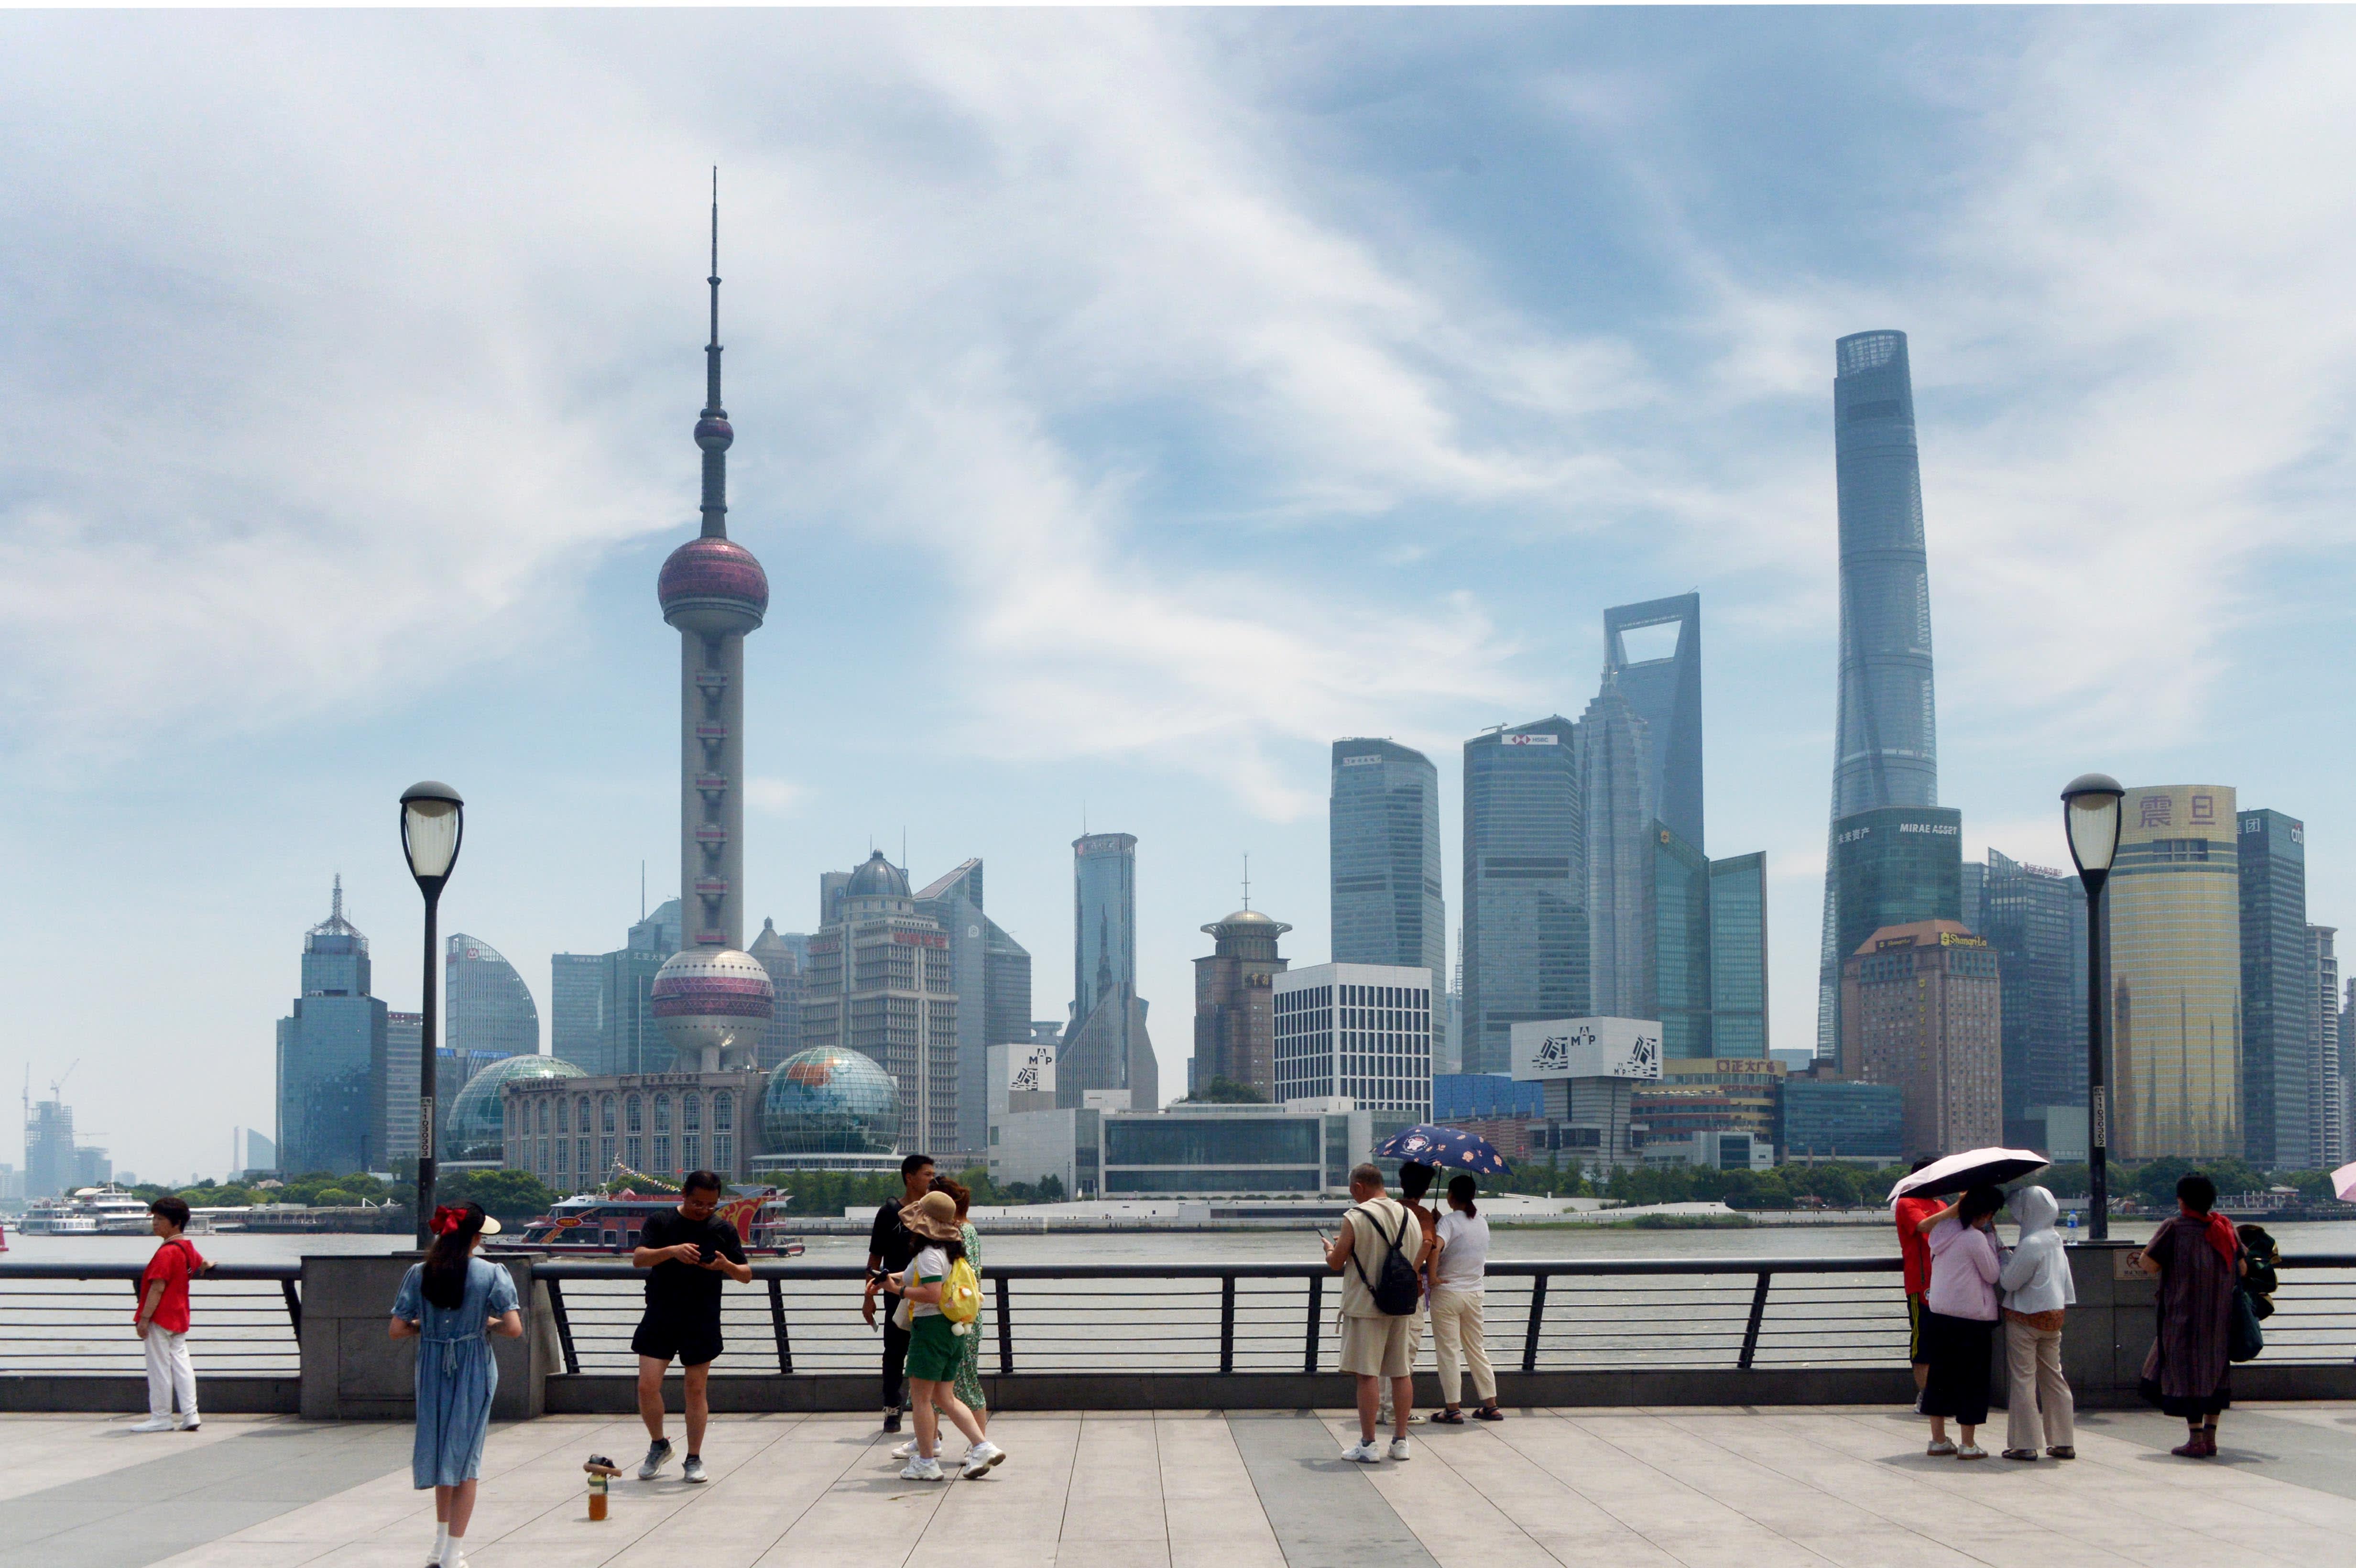 बीजिंग द्वारा कमजोर अर्थव्यवस्था को बढ़ावा देने के उपायों का वादा करने से चीनी शेयरों में तेजी आई